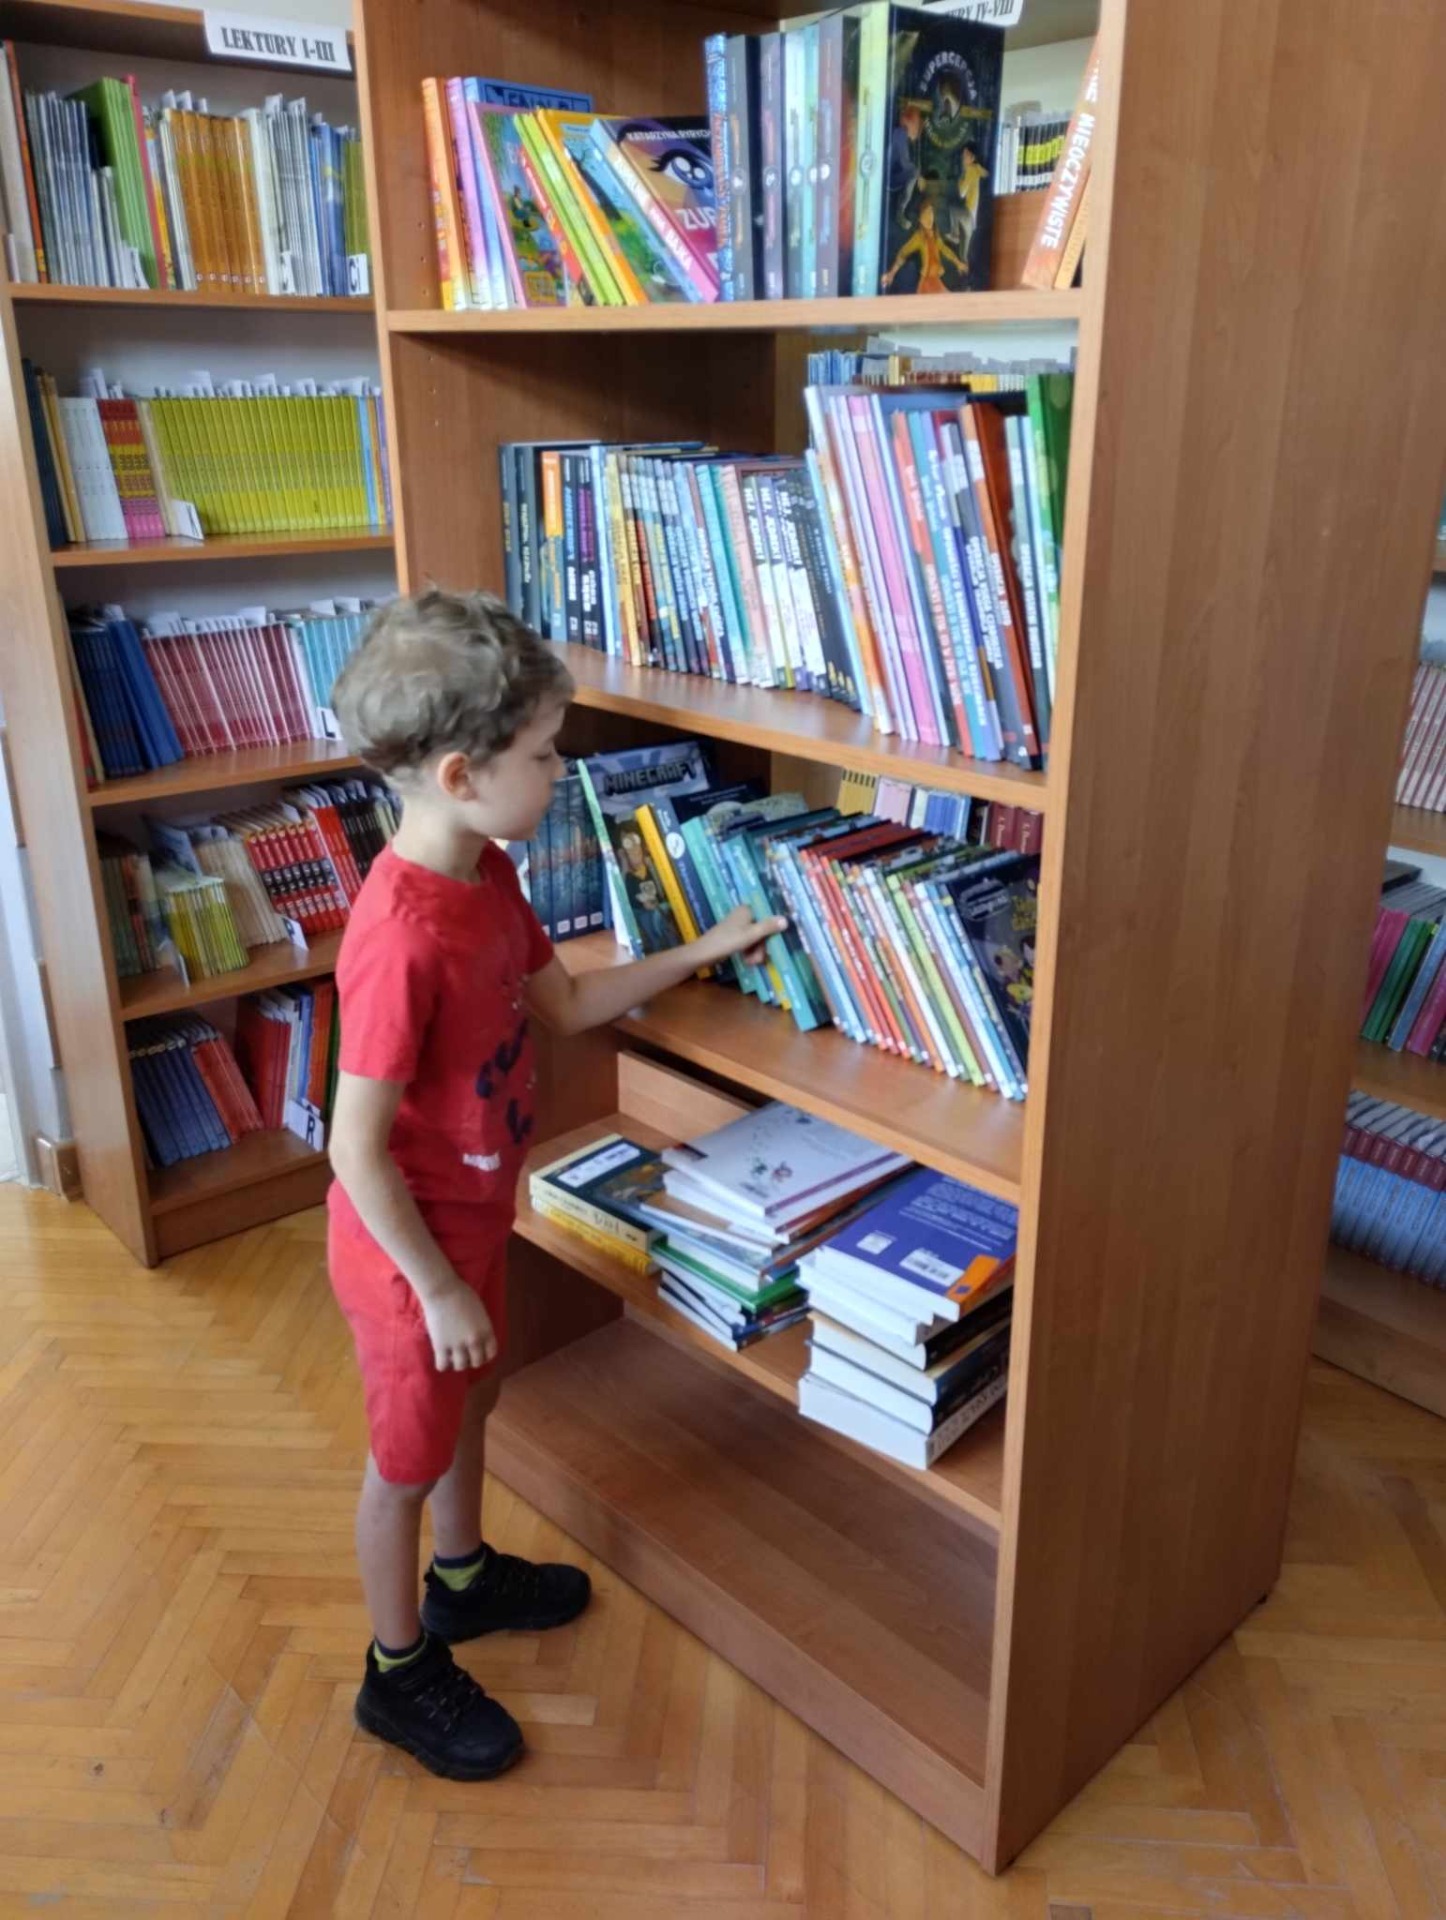 Na zdjęciu uczeń szuka wśród książek ciekawej pozycji bibliotecznej na okres wakacyjny.